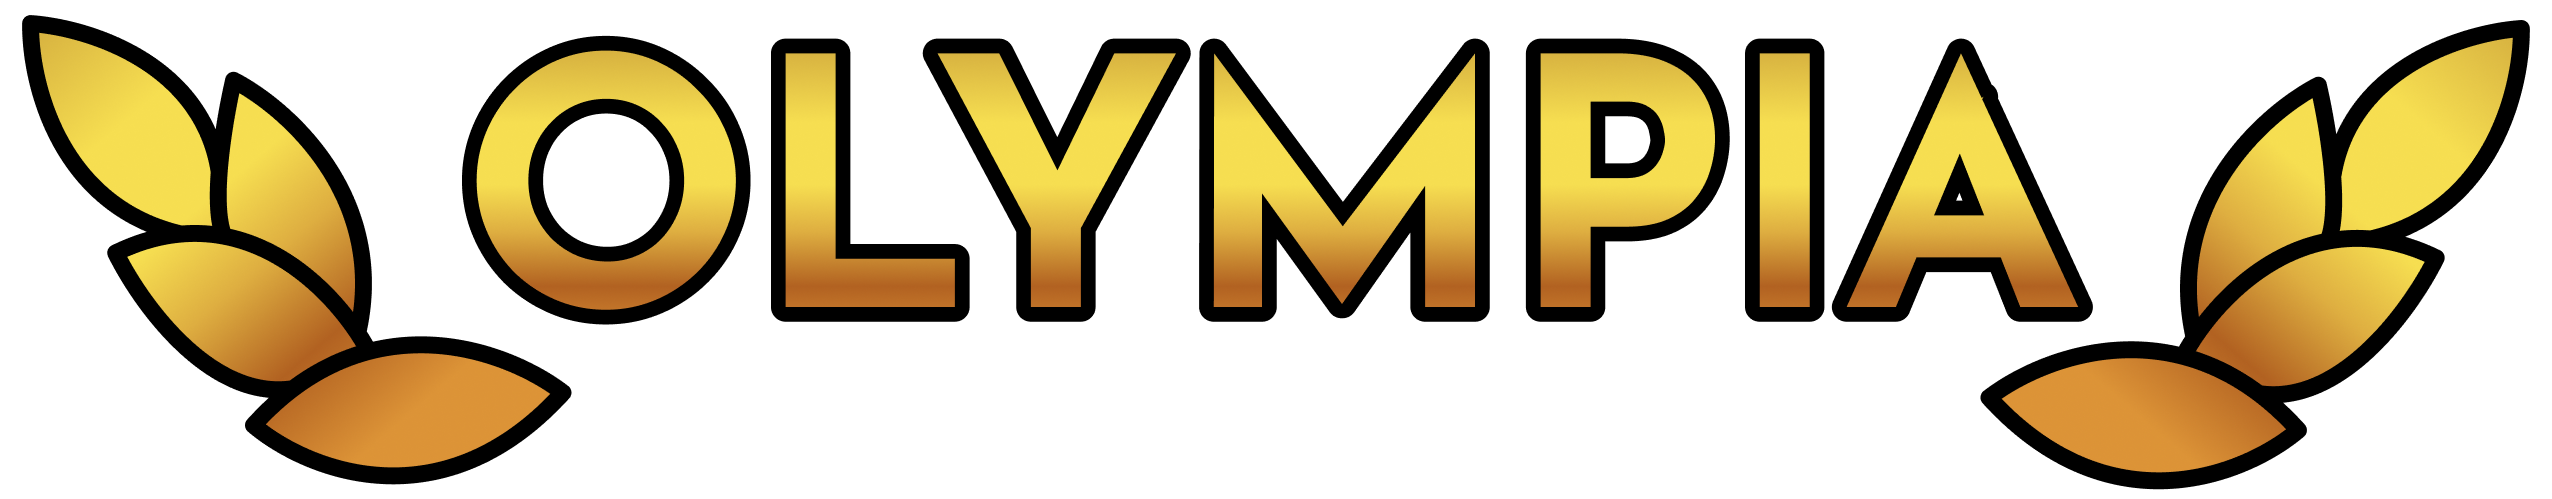 olympia-casino-logo